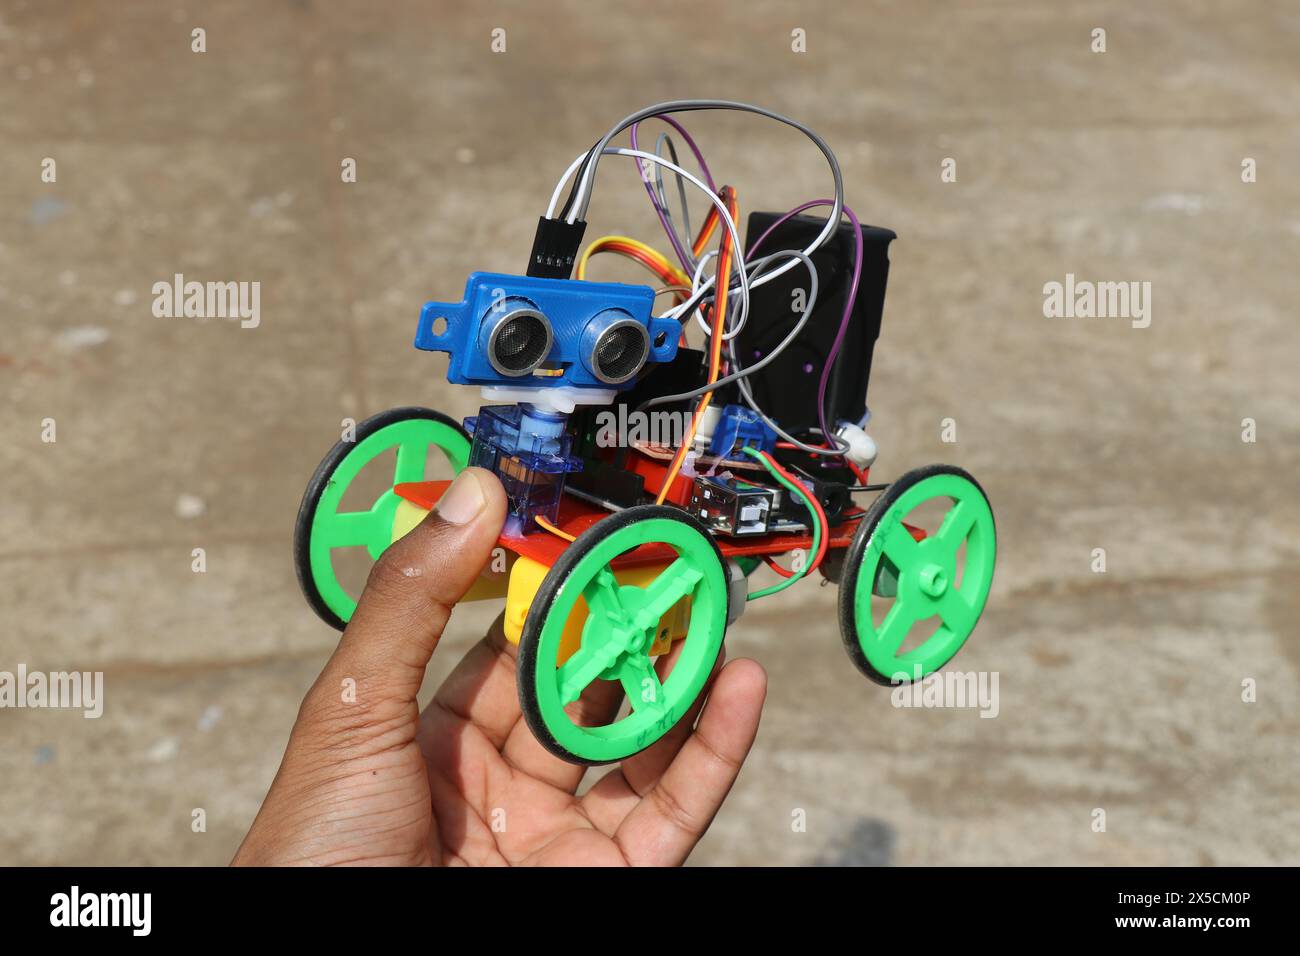 Progetto di auto robotizzate realizzato utilizzando la tecnologia di stampa 3d e l'uso di diversi componenti elettronici tenuti in mano Foto Stock